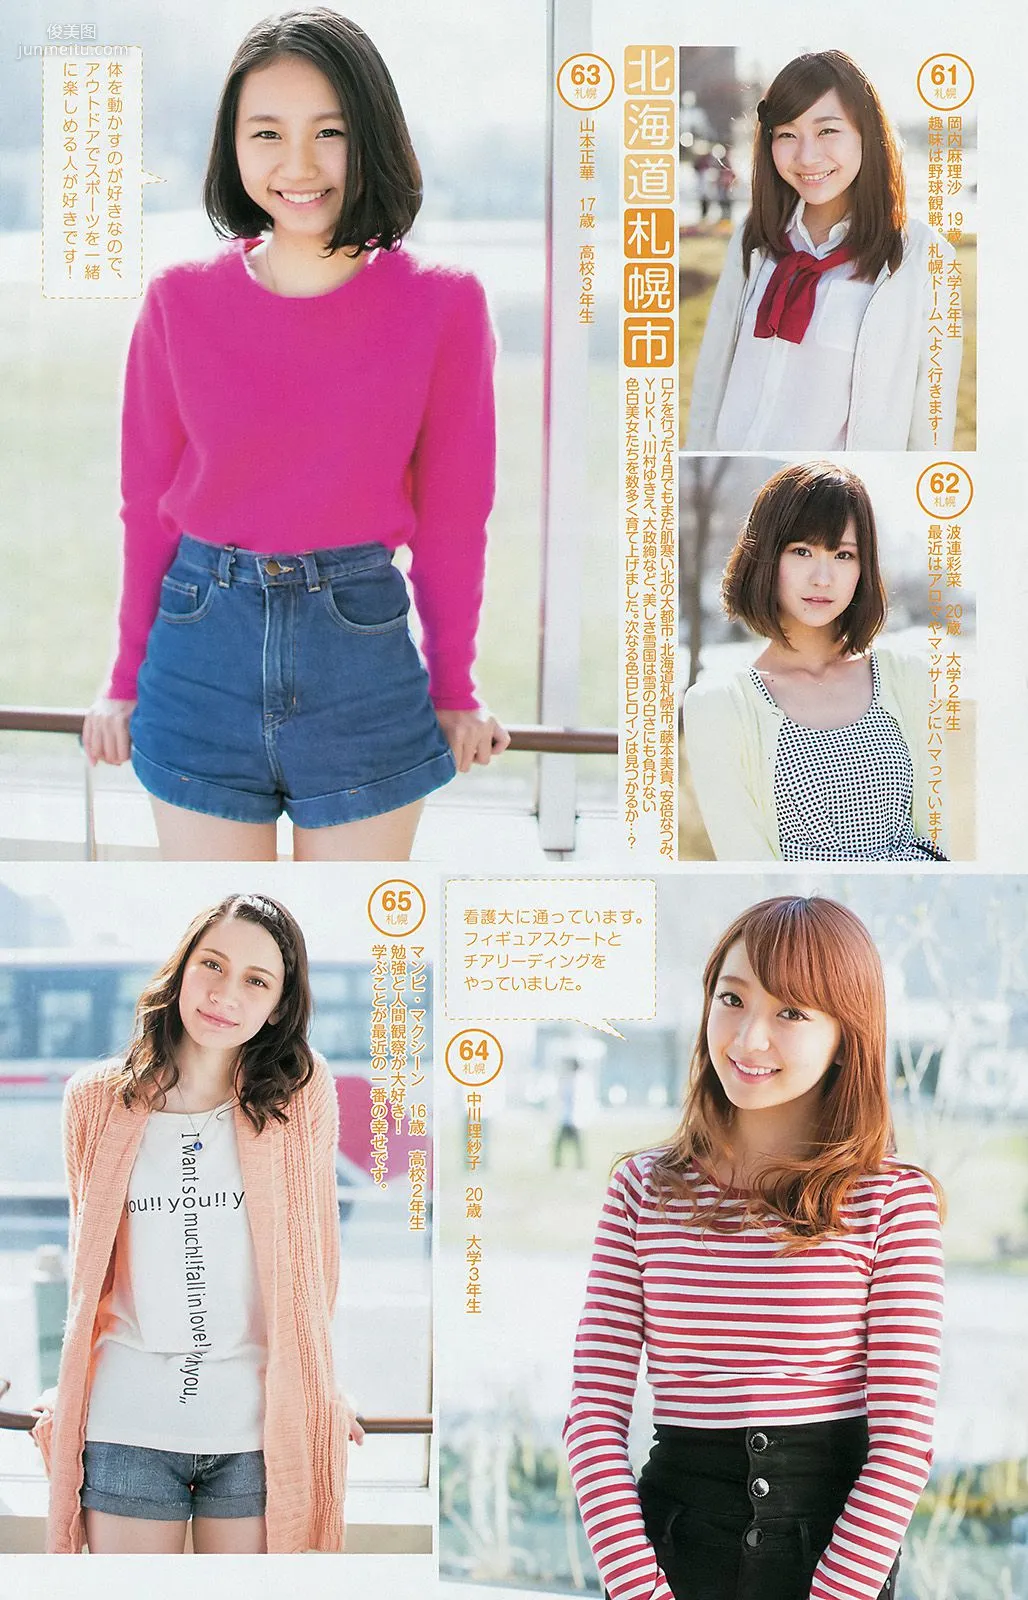 指原莉乃 ギャルコン2014 [Weekly Young Jump] 2014年No.26 写真杂志10